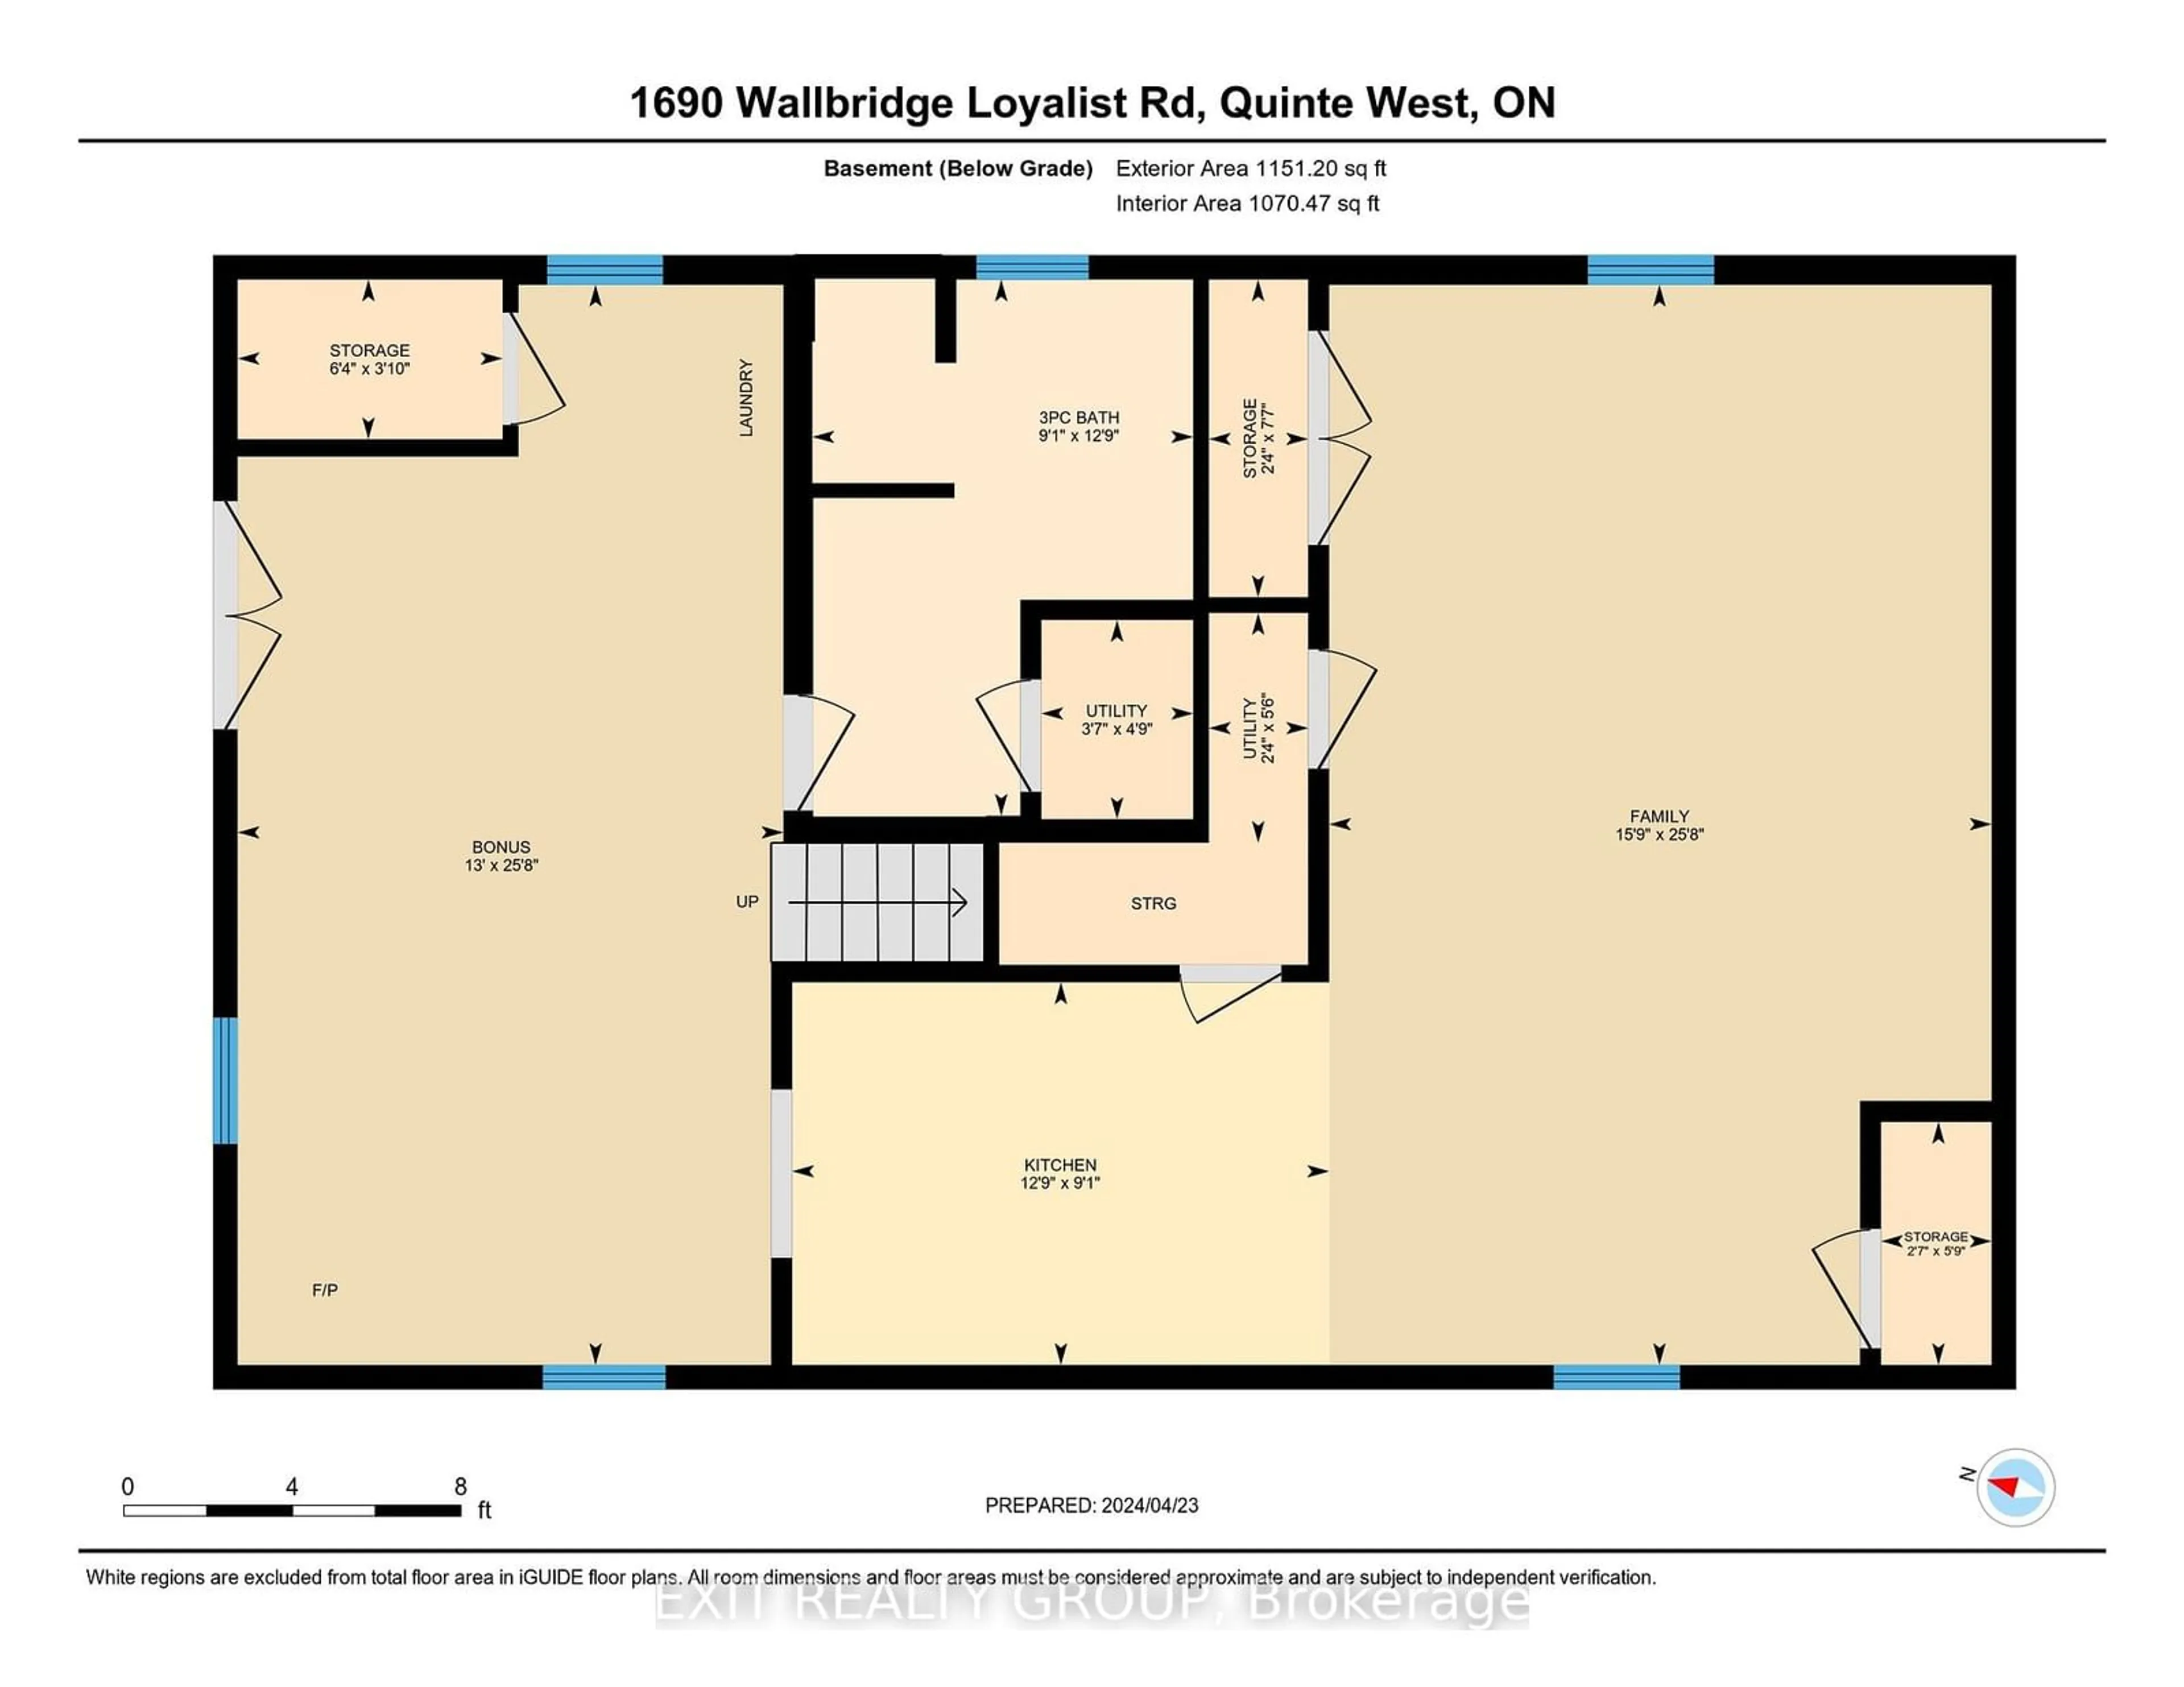 Floor plan for 1690 Wallbridge Loyalist Rd, Quinte West Ontario K8N 4Z5